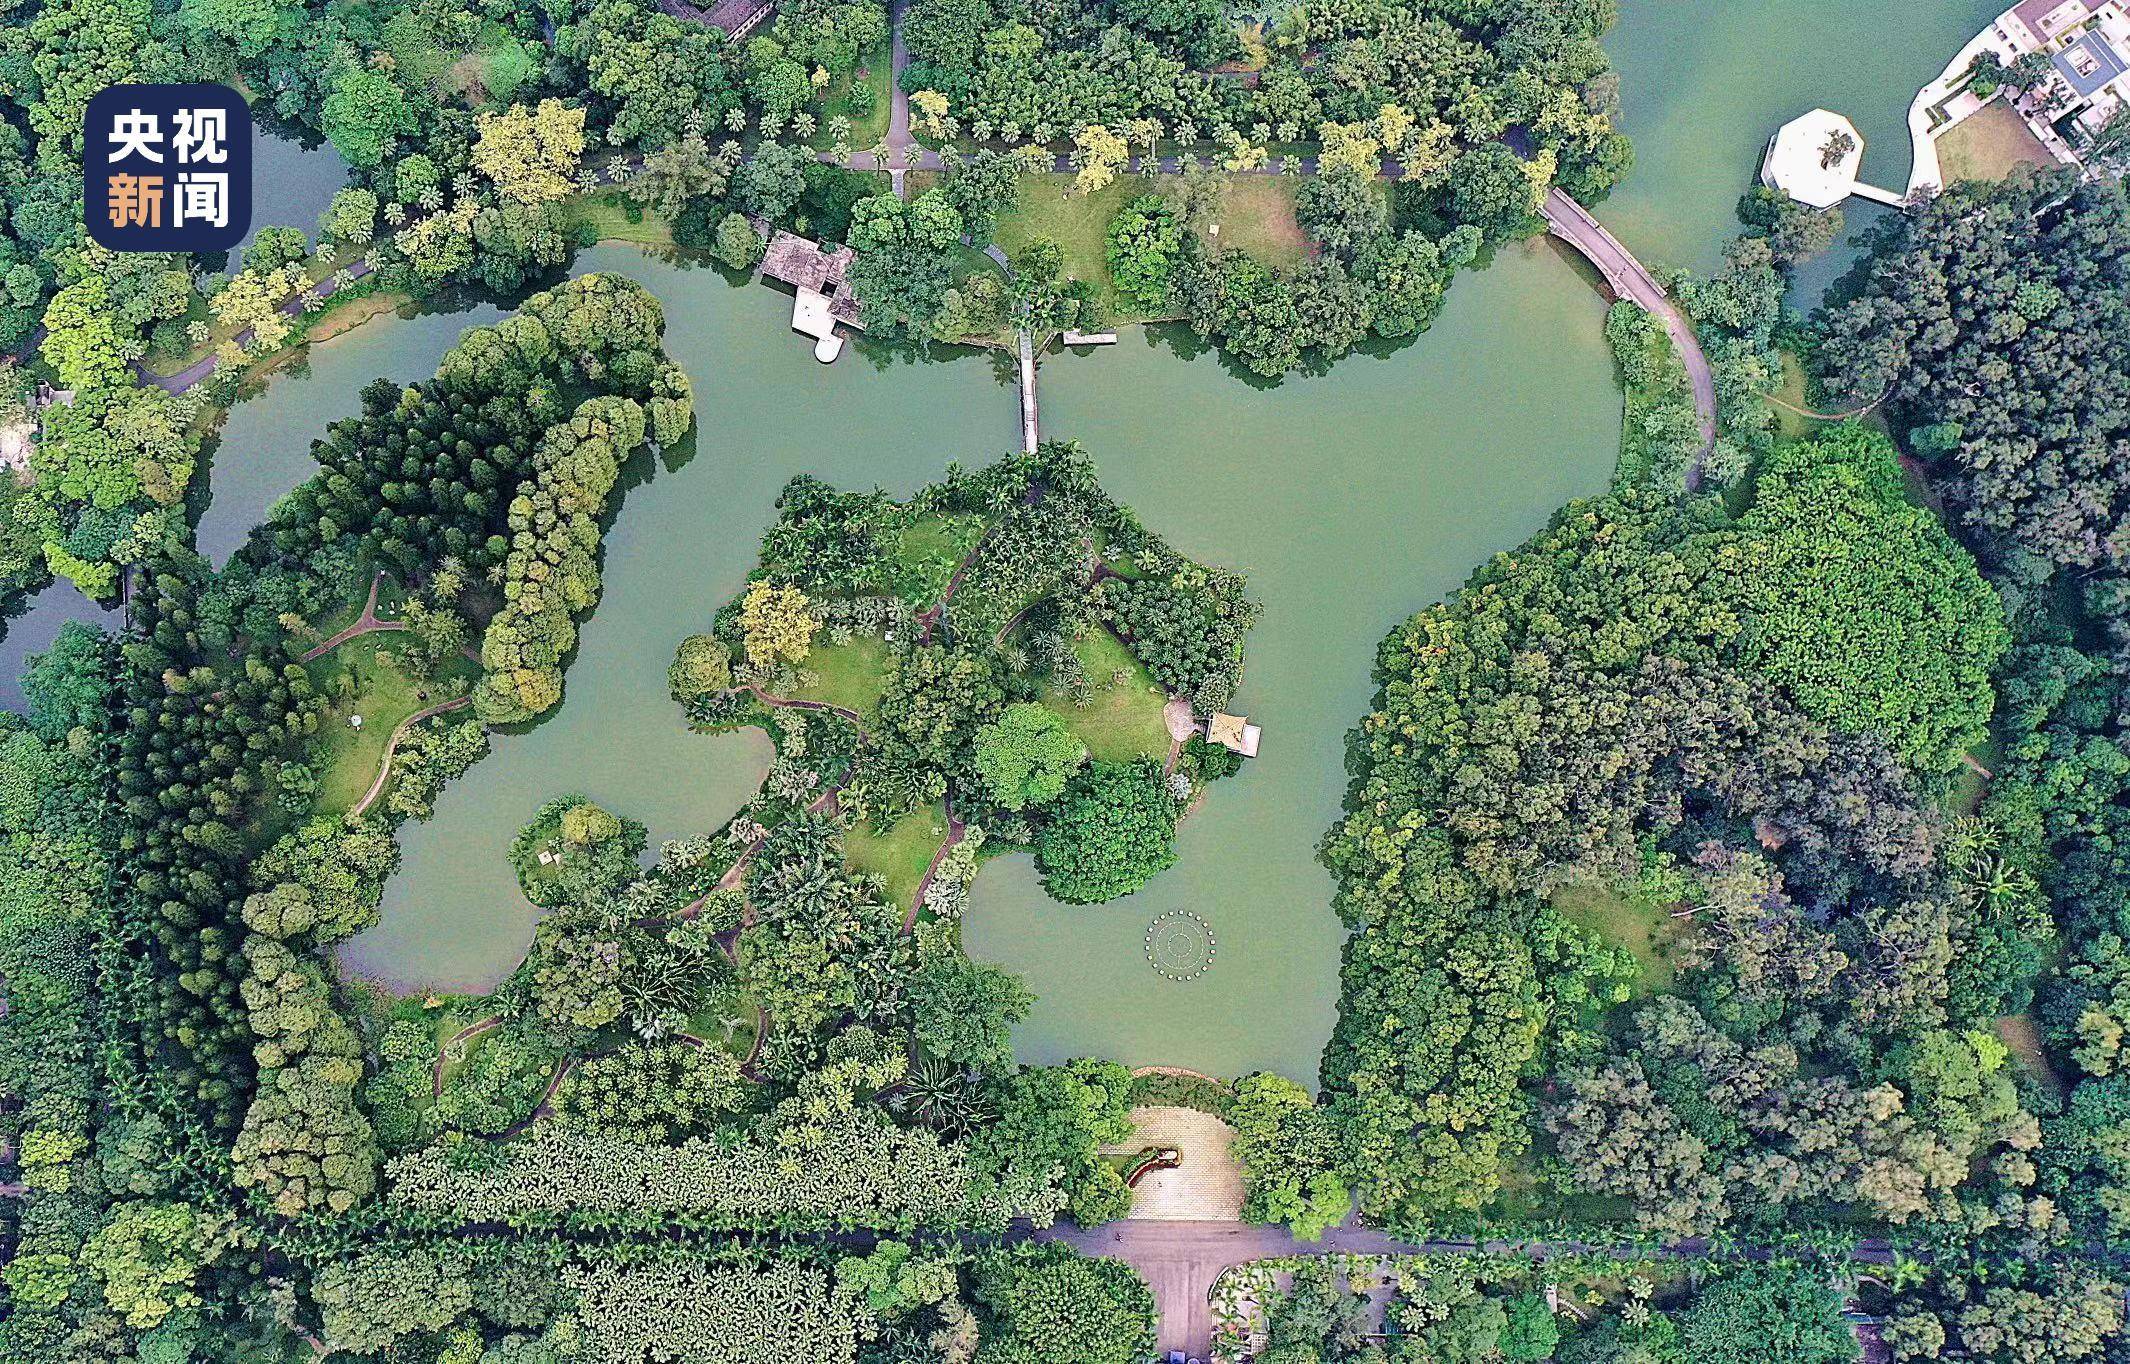 北京植物园地图 植物园的地图路线_华夏智能网